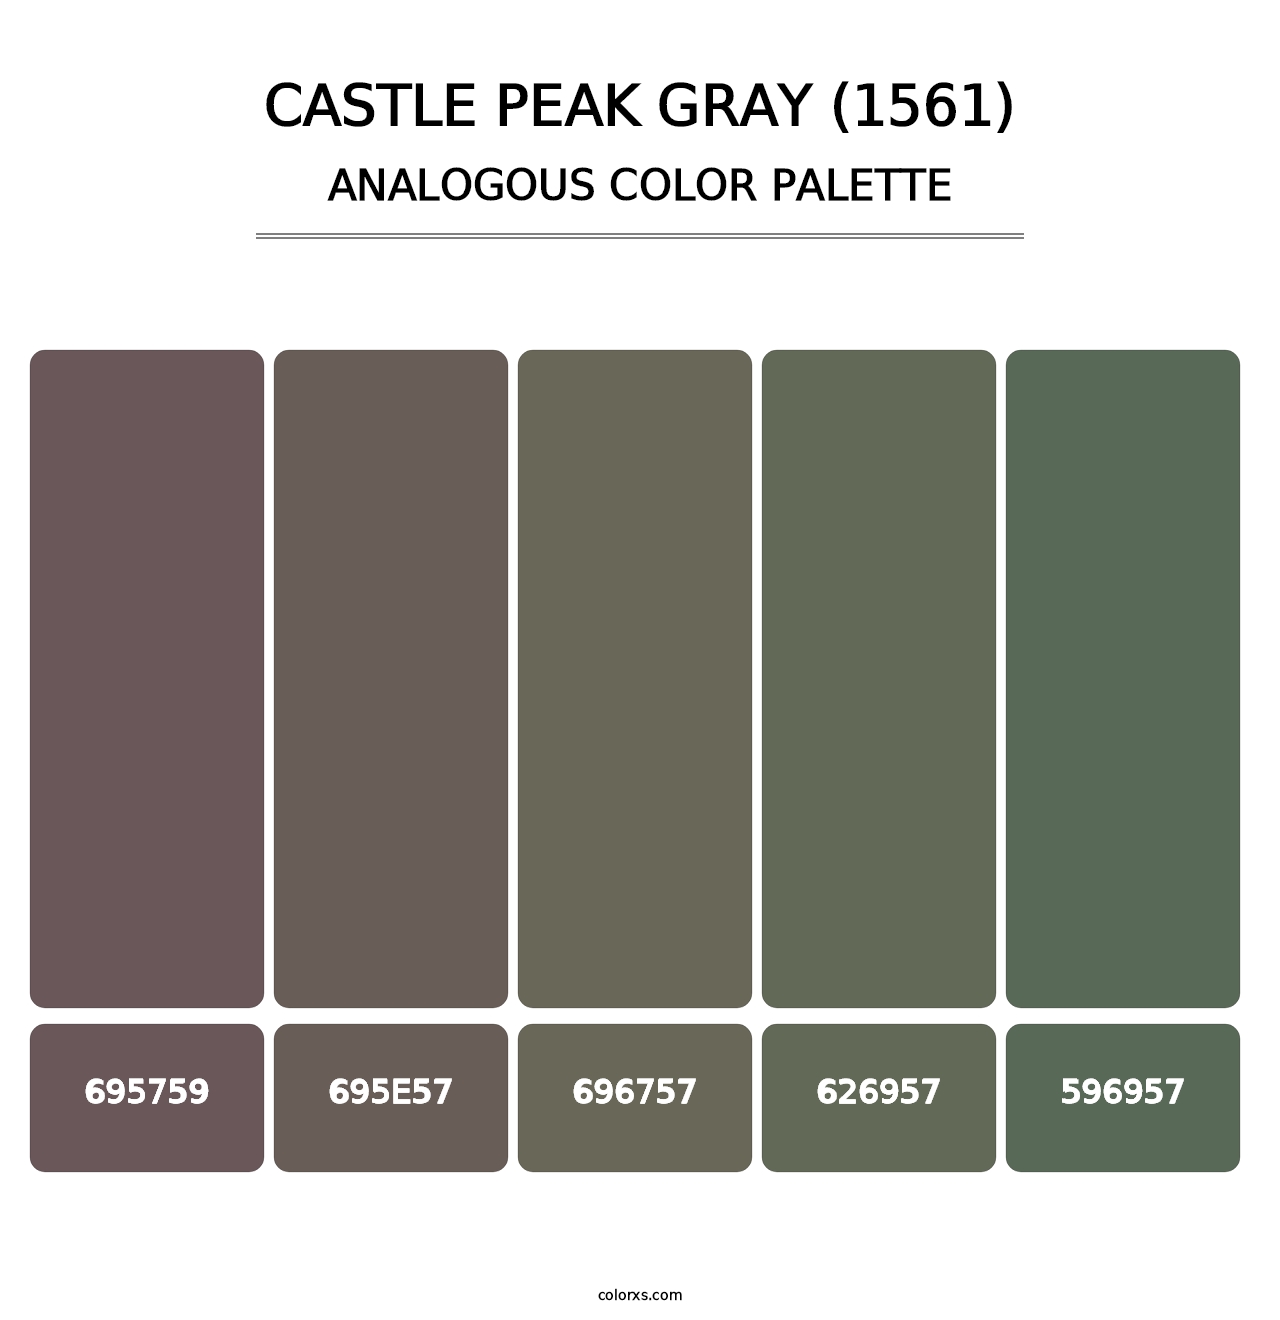 Castle Peak Gray (1561) - Analogous Color Palette